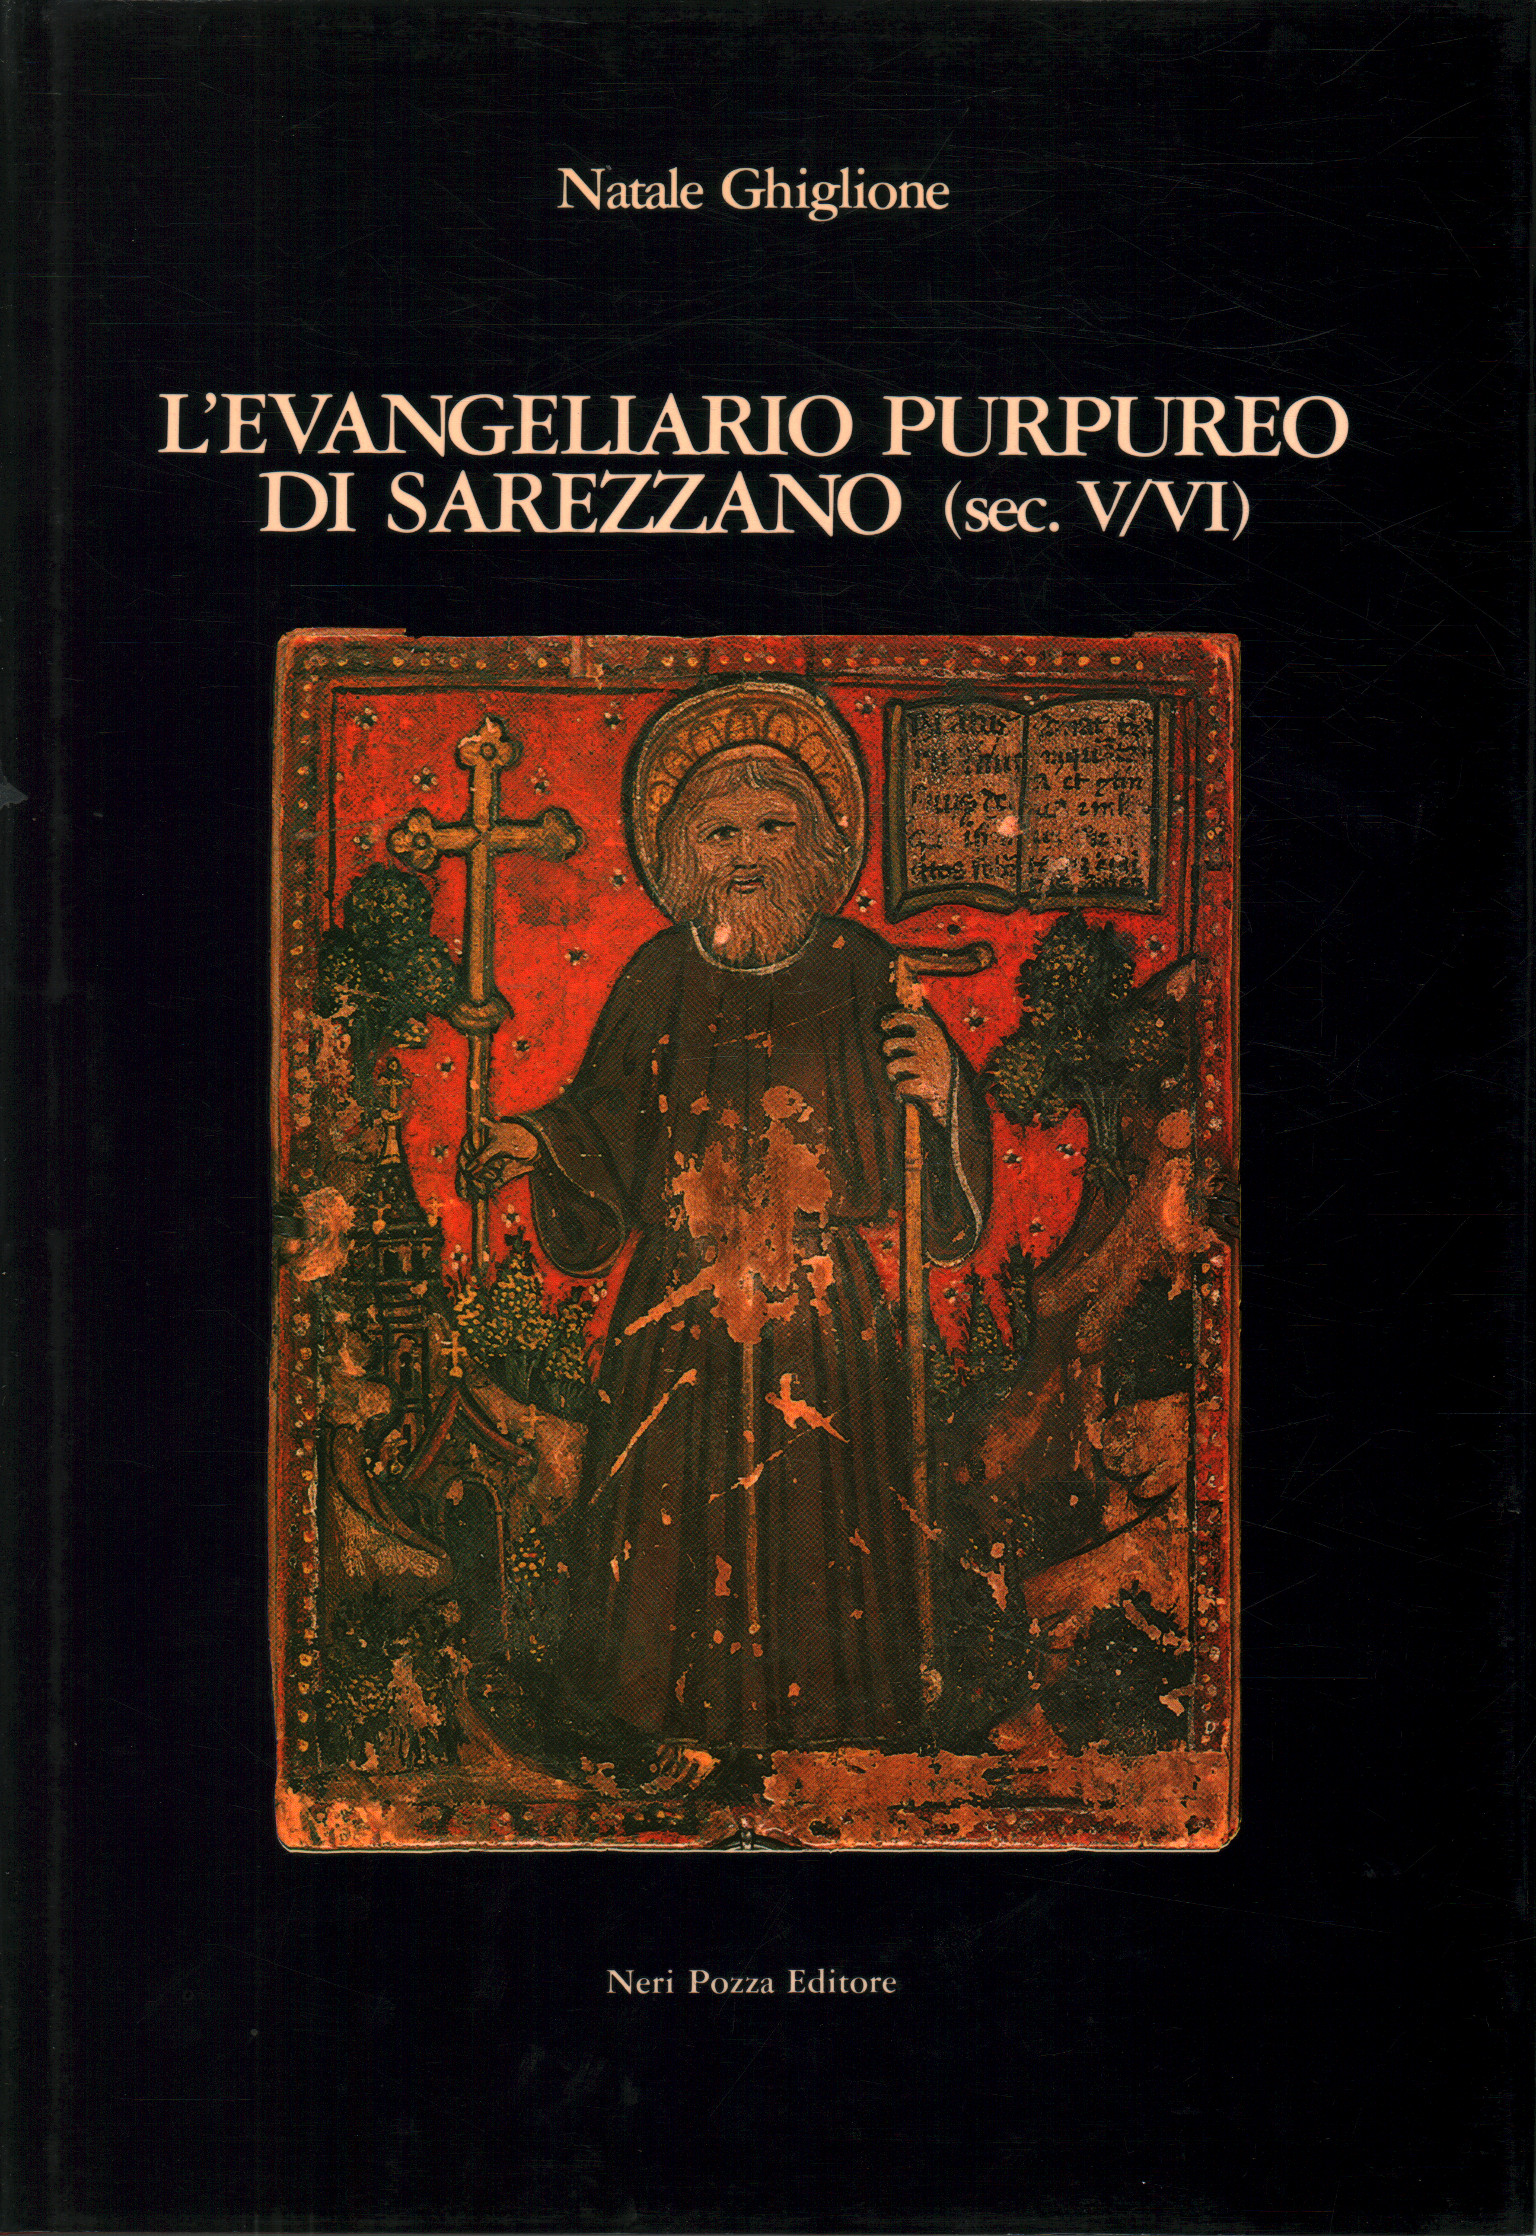 The purple evangeliary of Sarezzano (5th / 6th century), Natale Ghiglione